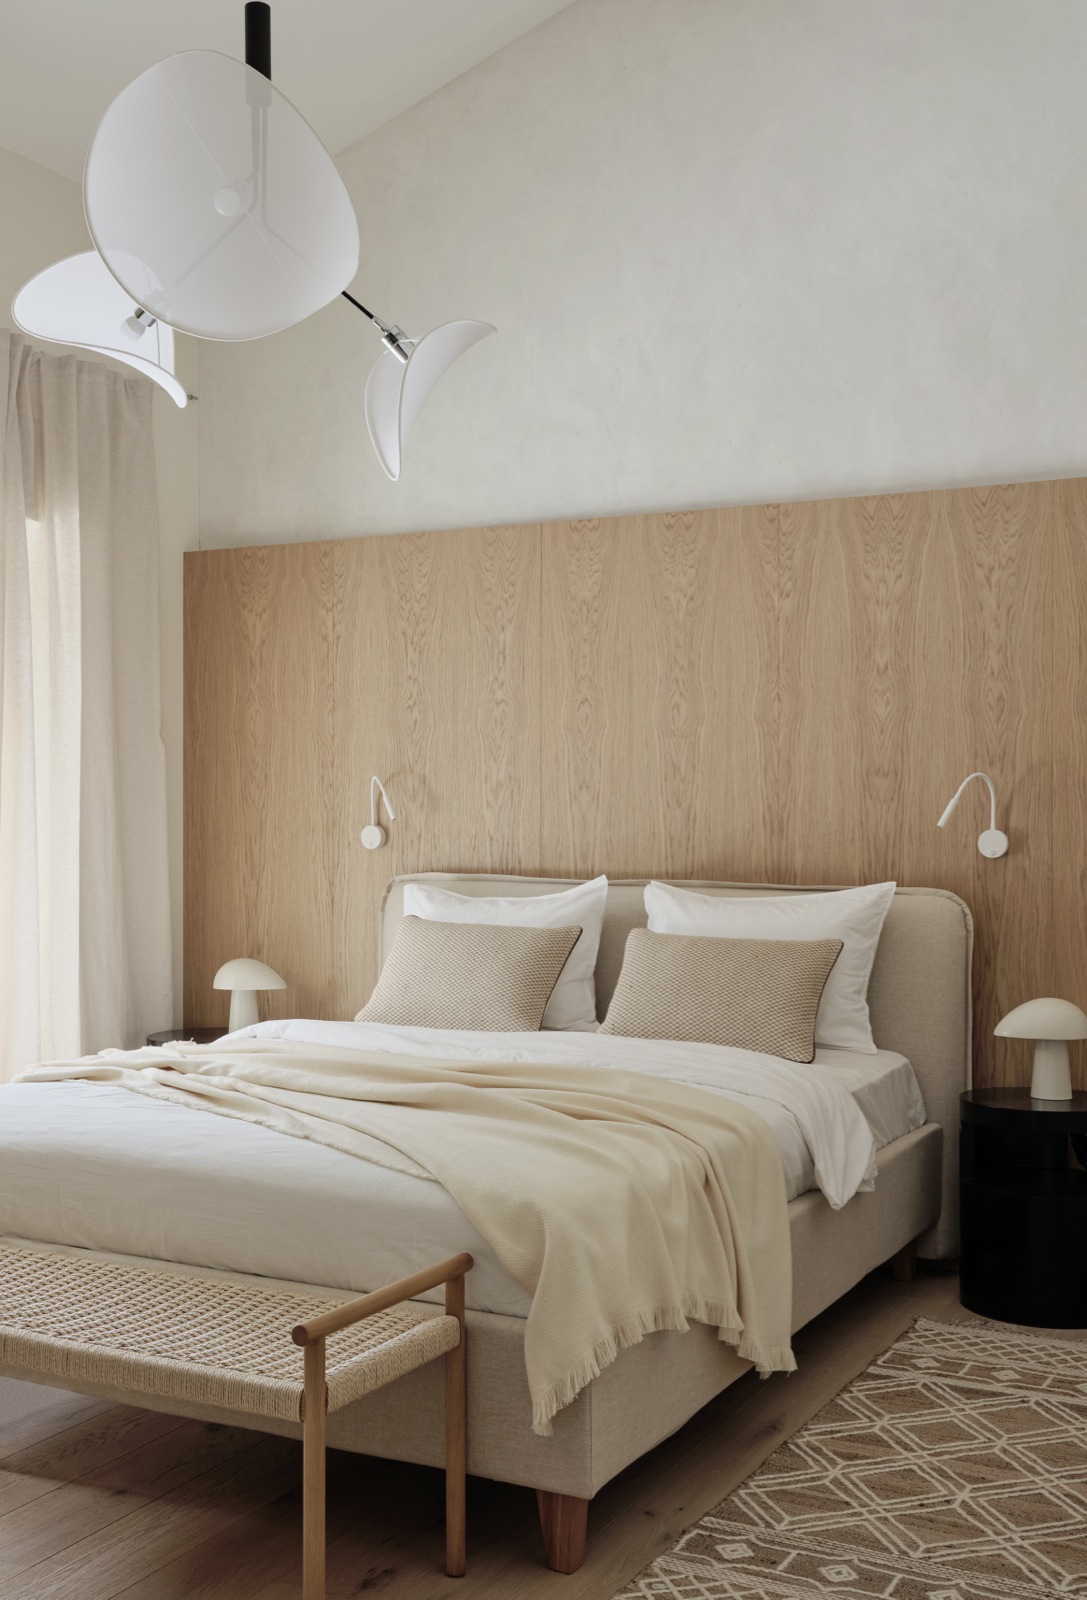 Kết cấu mềm mại của tấm thảm trải sàn đặt ngay bên cạnh giường ngủ với những tone màu trung tính chủ đạo như xám, be, trắng hay nội thất bằng vật liệu gỗ tạo cho phòng ngủ một cái nhìn nhẹ nhàng, thư giãn tuyệt đối.